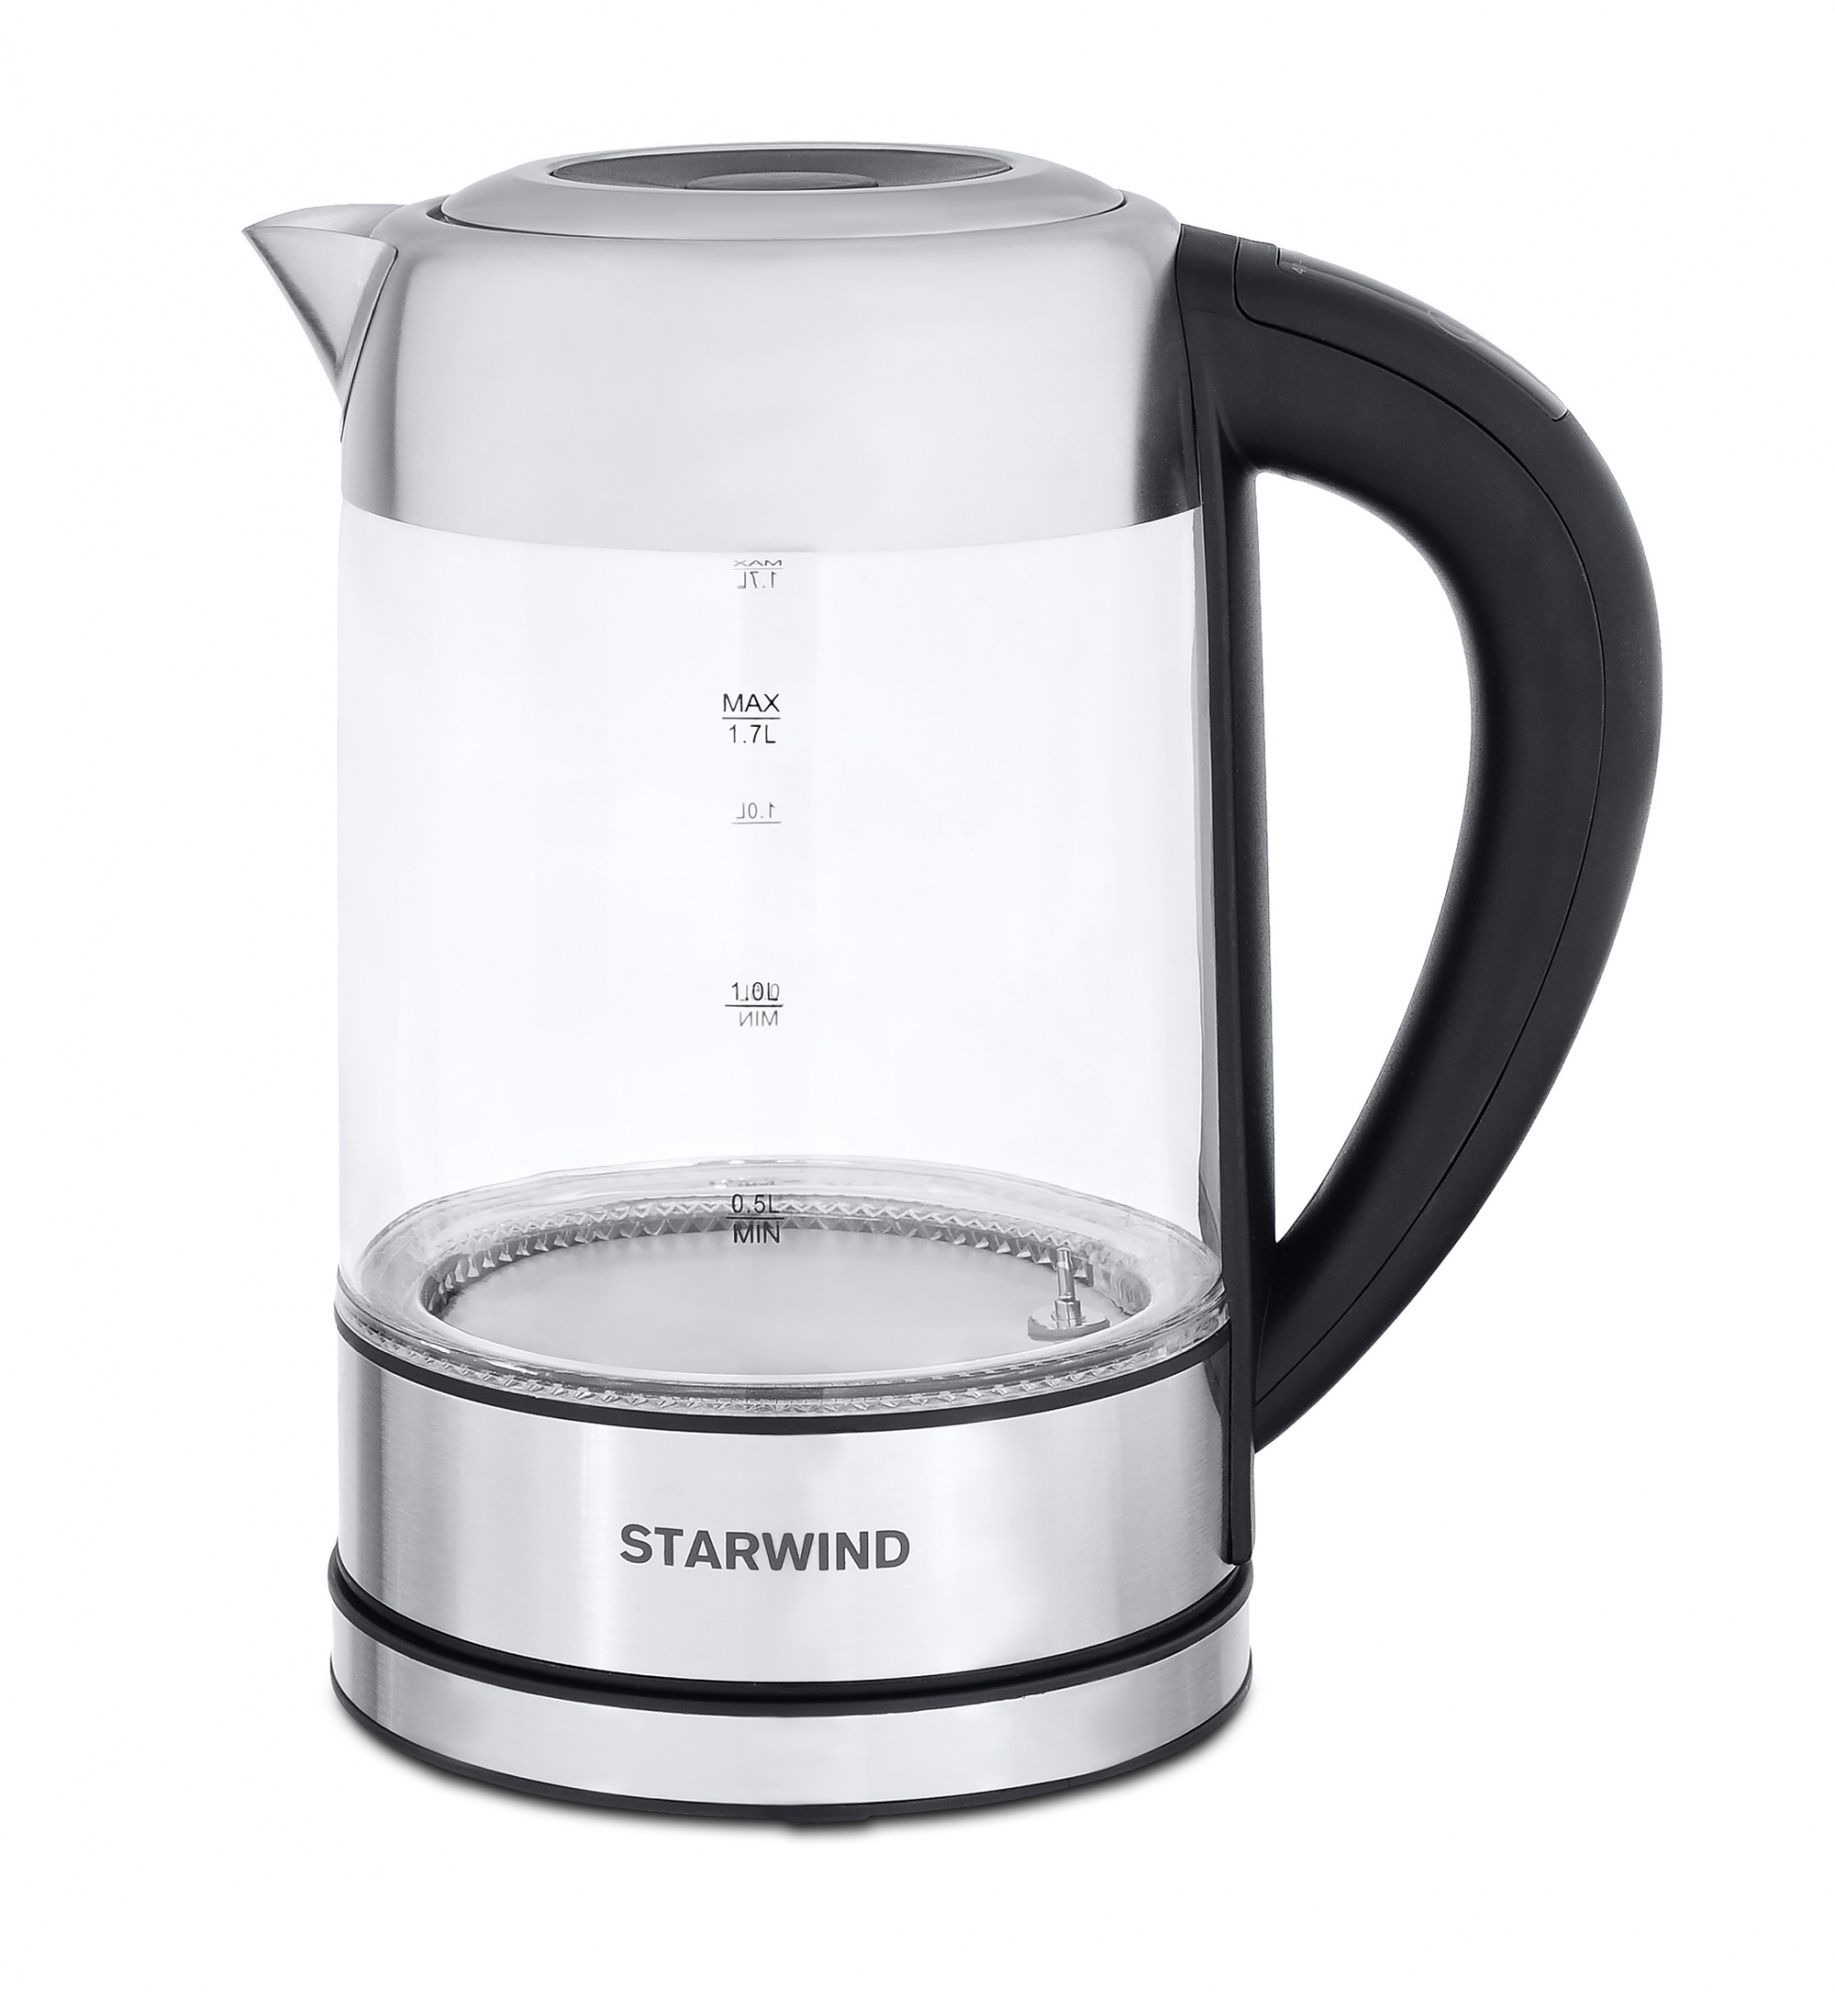 Чайник электрический Starwind SKG5213 черный/серебристый, стекло от магазина Старвинд